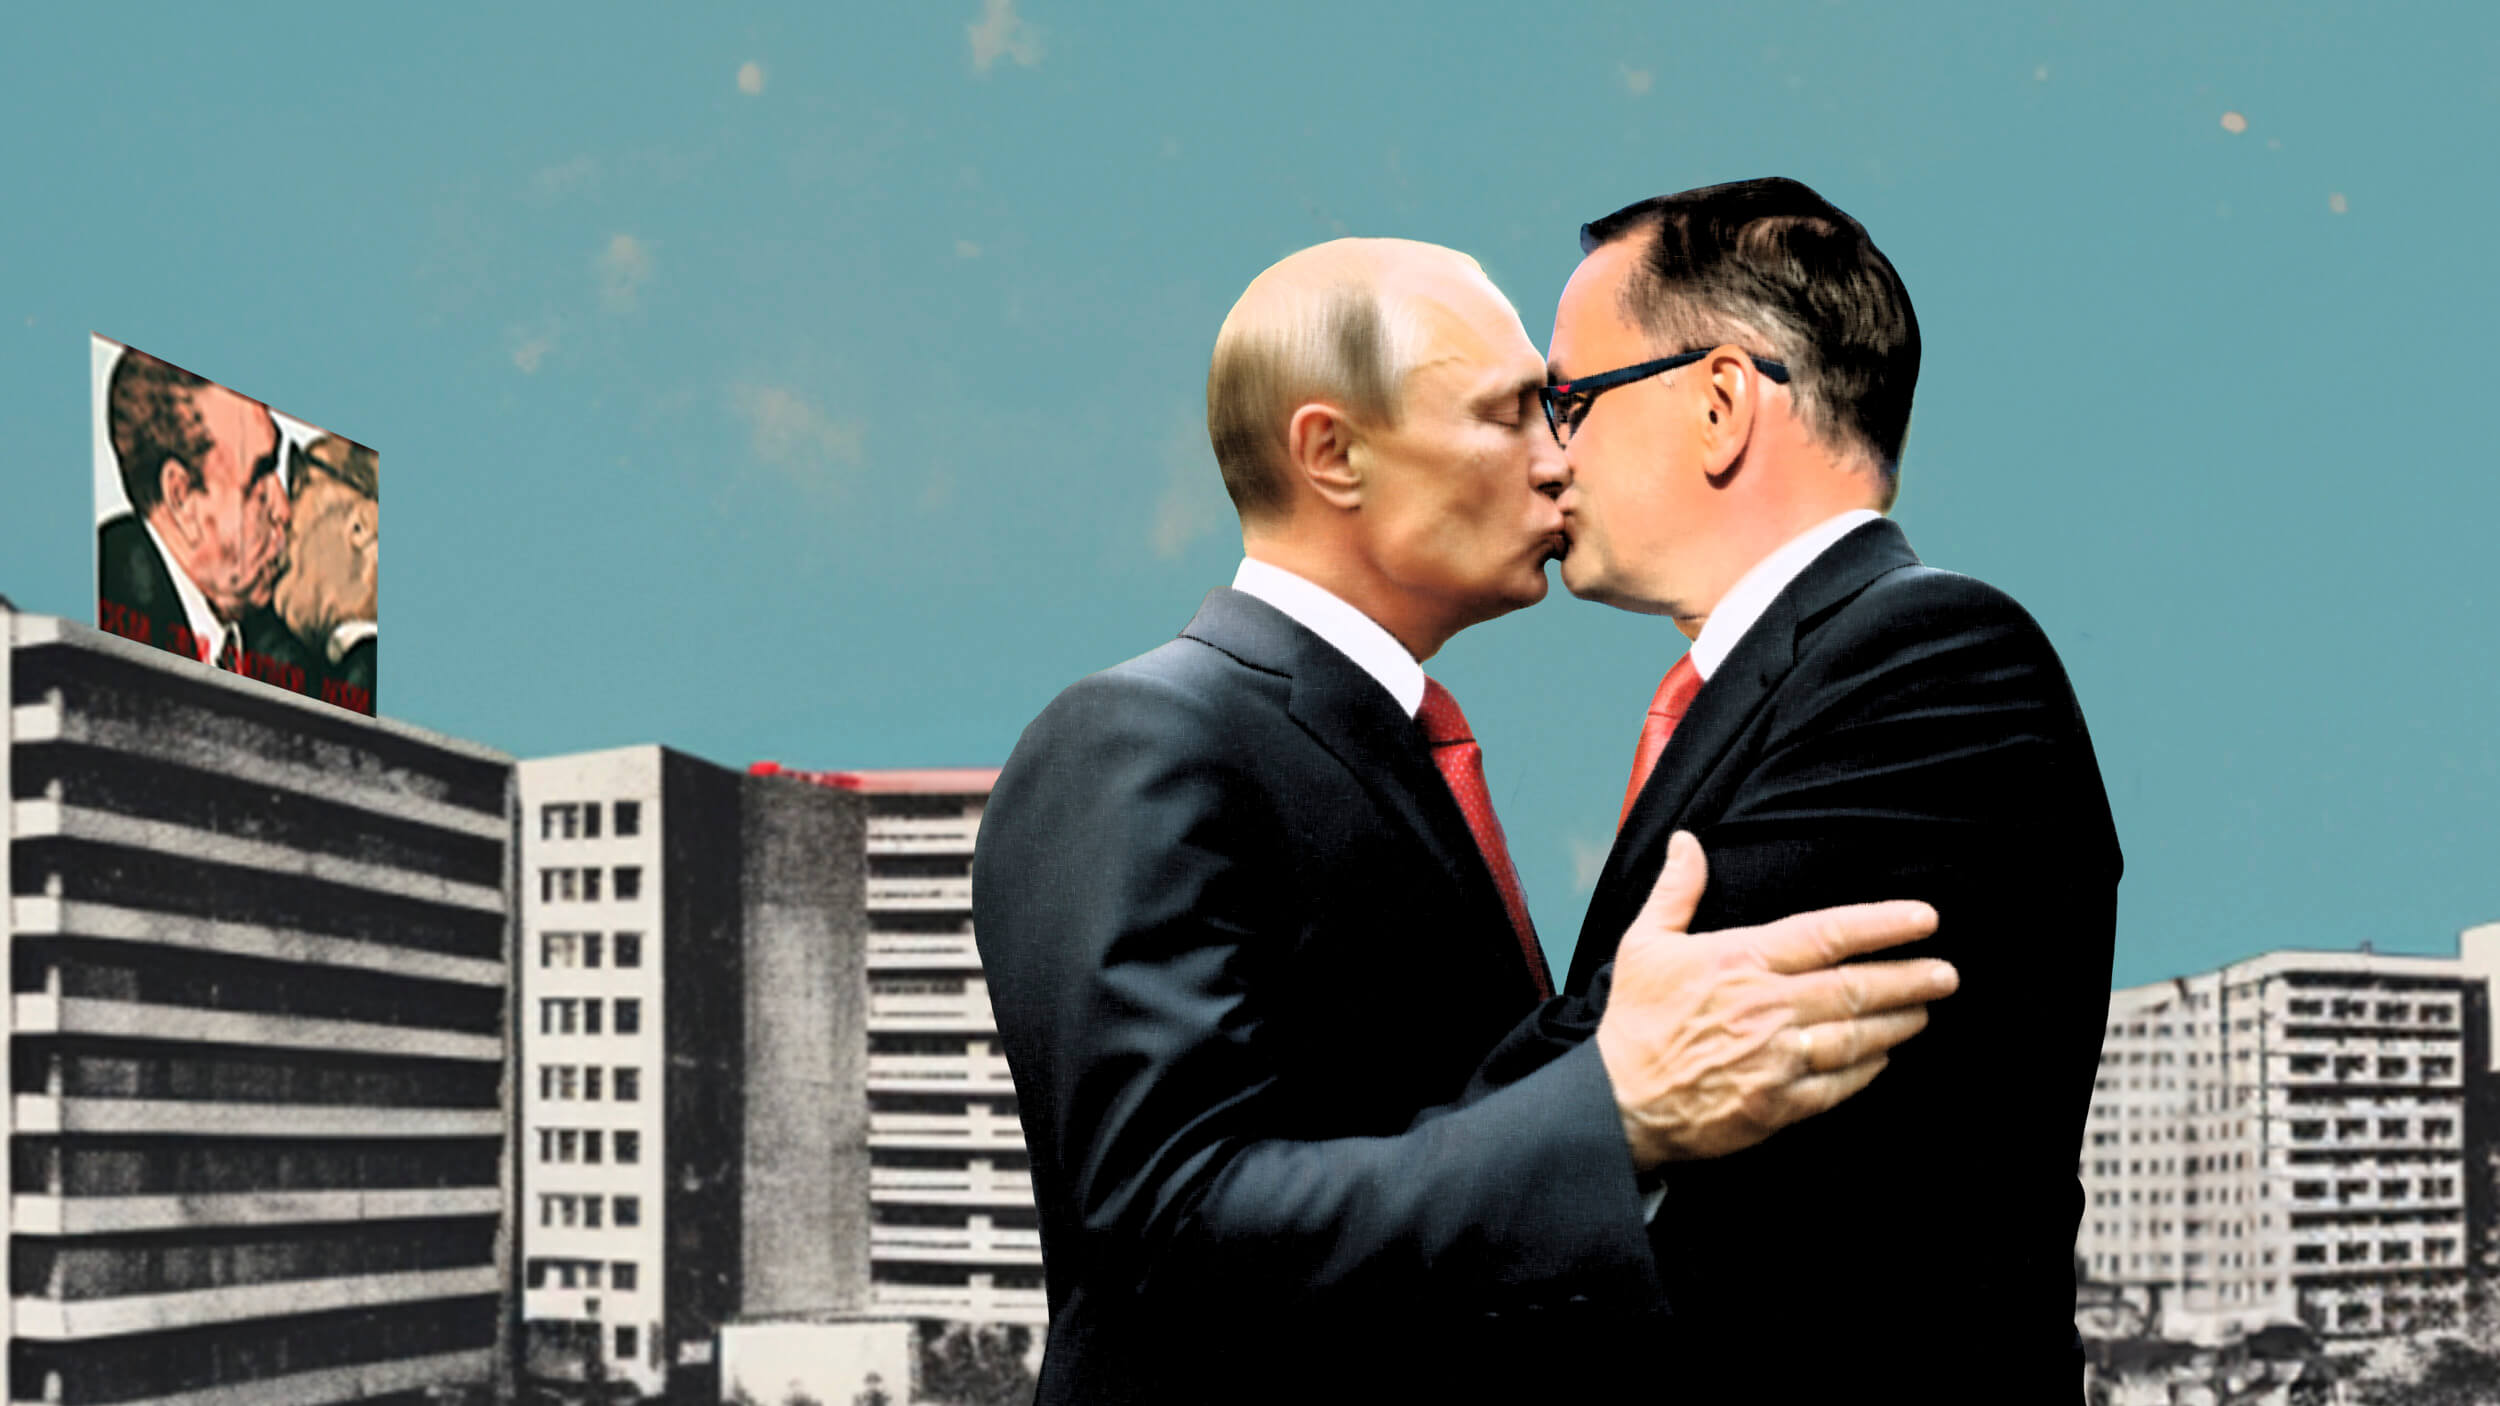 Die Collage zeigt einen Bruderkuss zwischen Putin und dem AfD Chrupalla